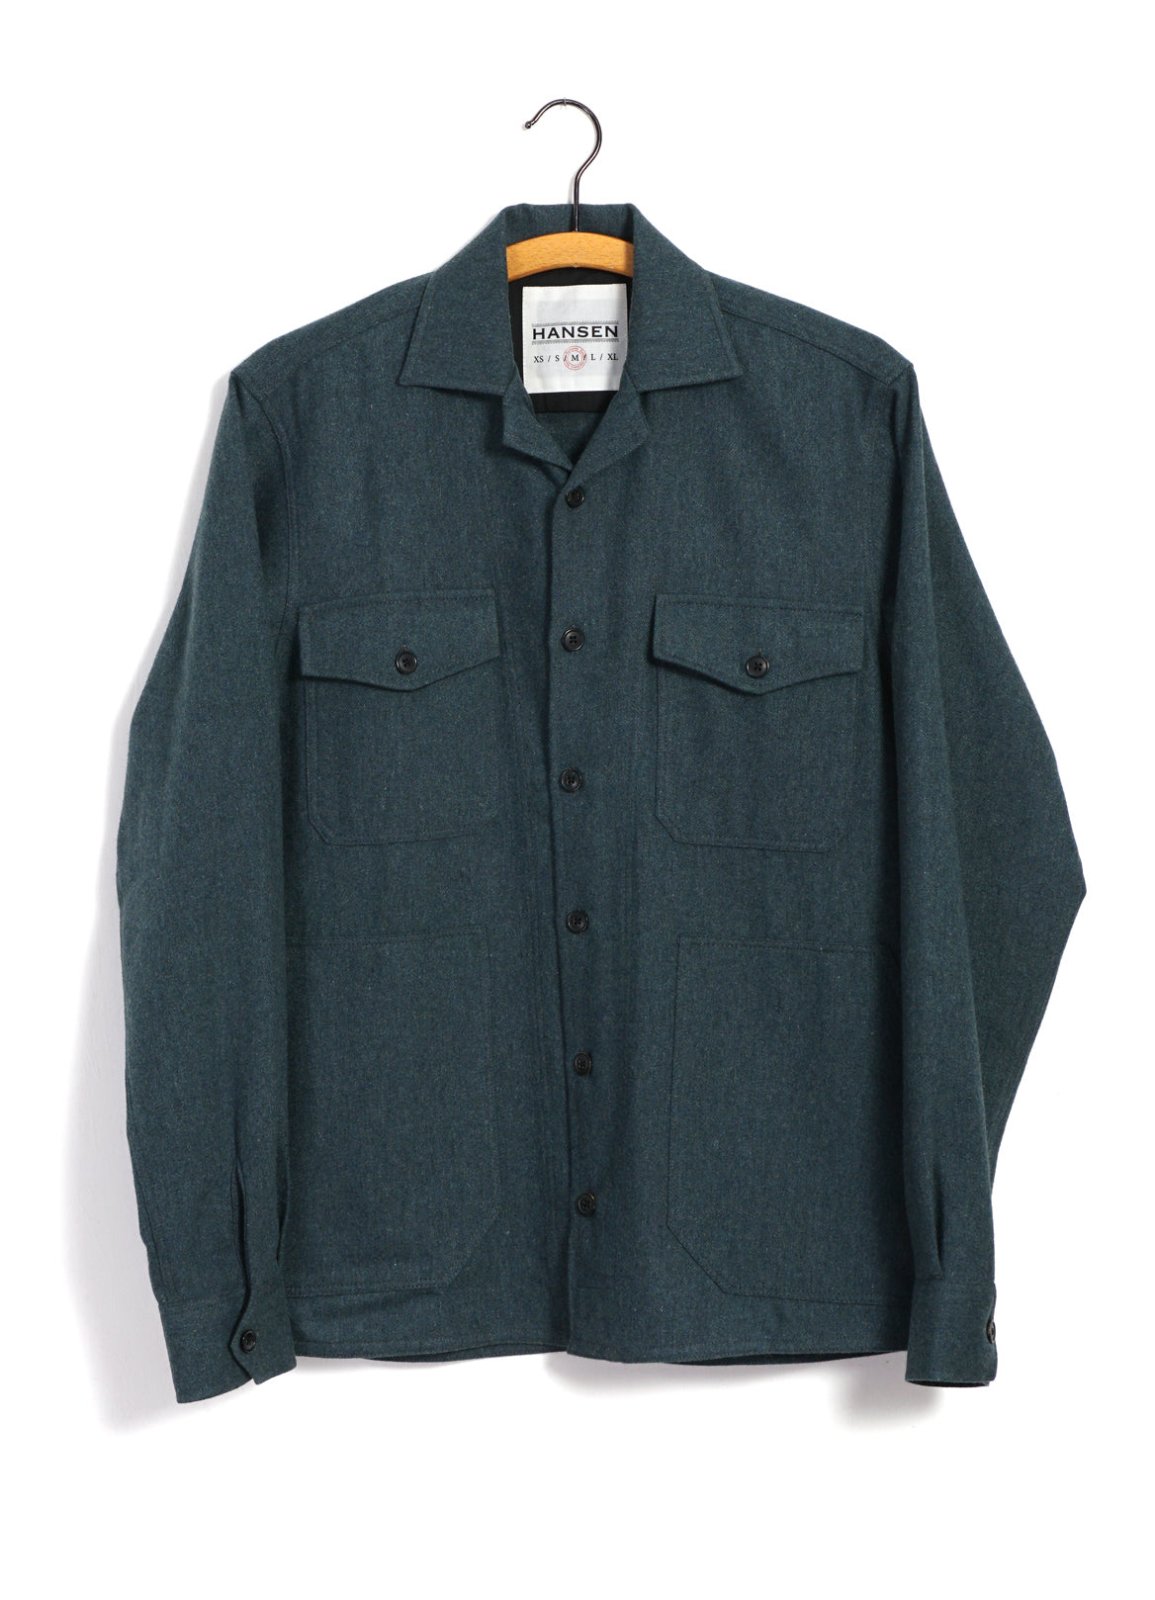 HANSEN GARMENTS - STEFAN | Worker Over Shirt | Moss Green - HANSEN Garments